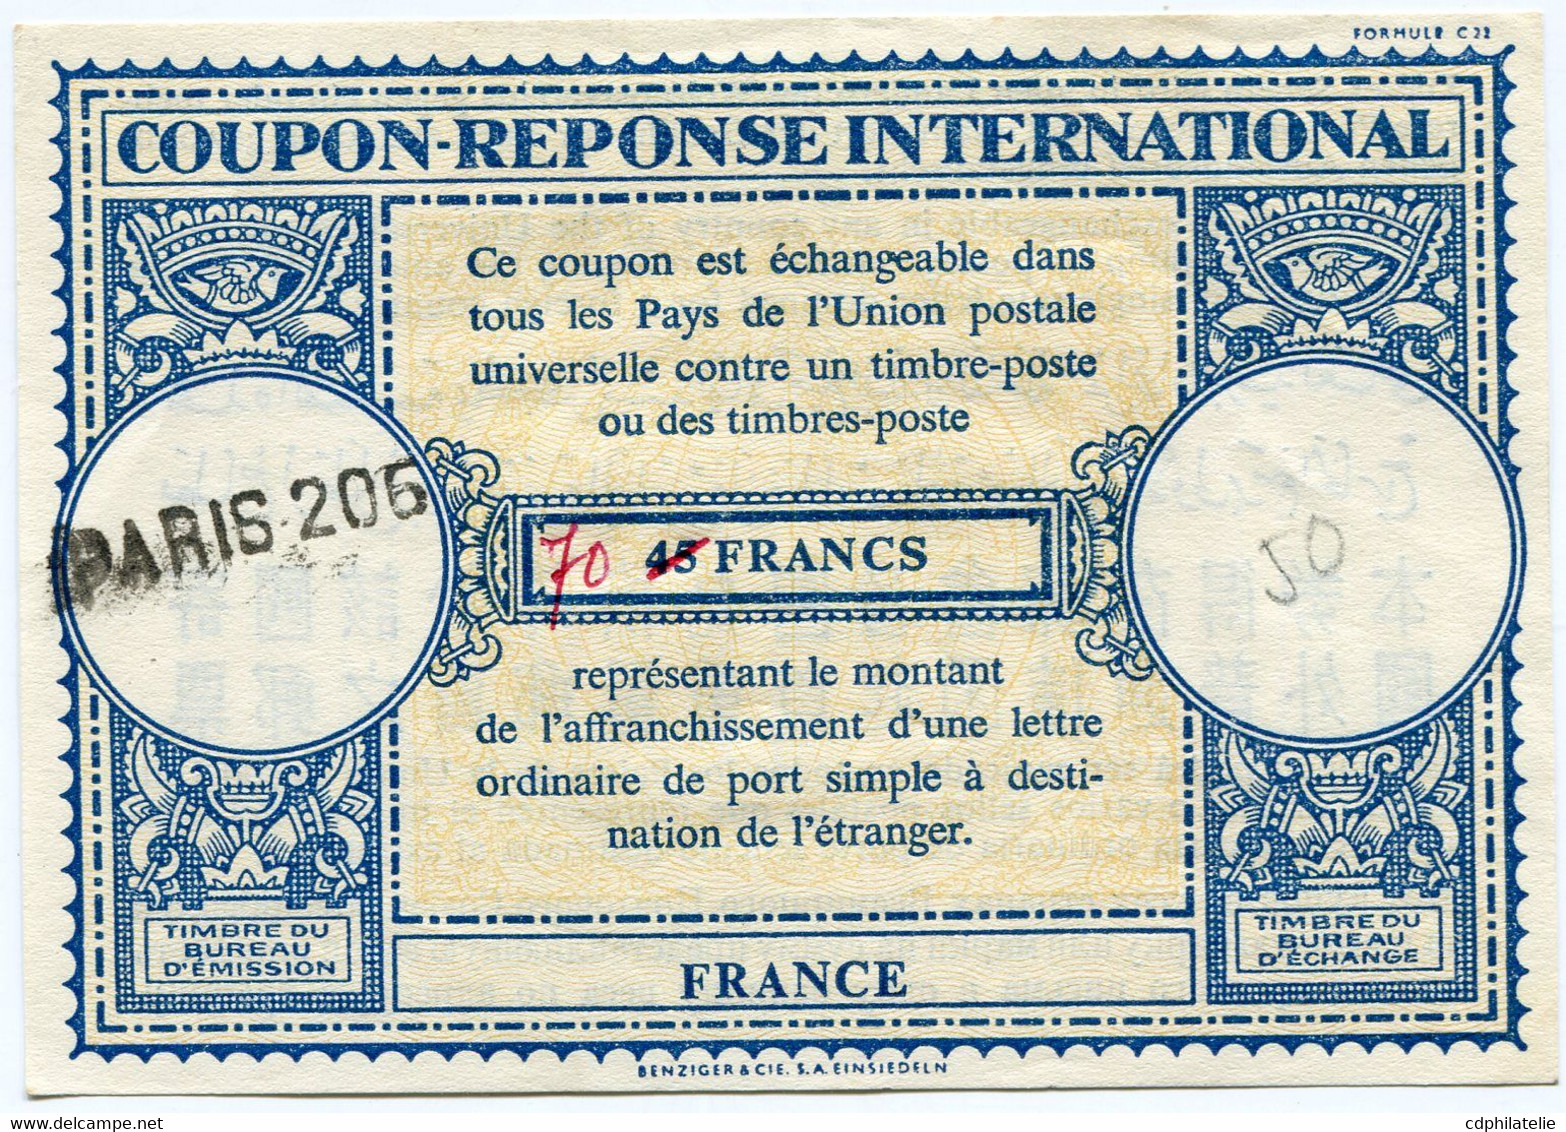 FRANCE COUPON-REPONSE INTERNATIONAL DE 45 FRANCS AVEC MODIFICATION MANUSCRITE DE TARIF 70 FRANCS AVEC OBL PARIS 206 - Antwortscheine